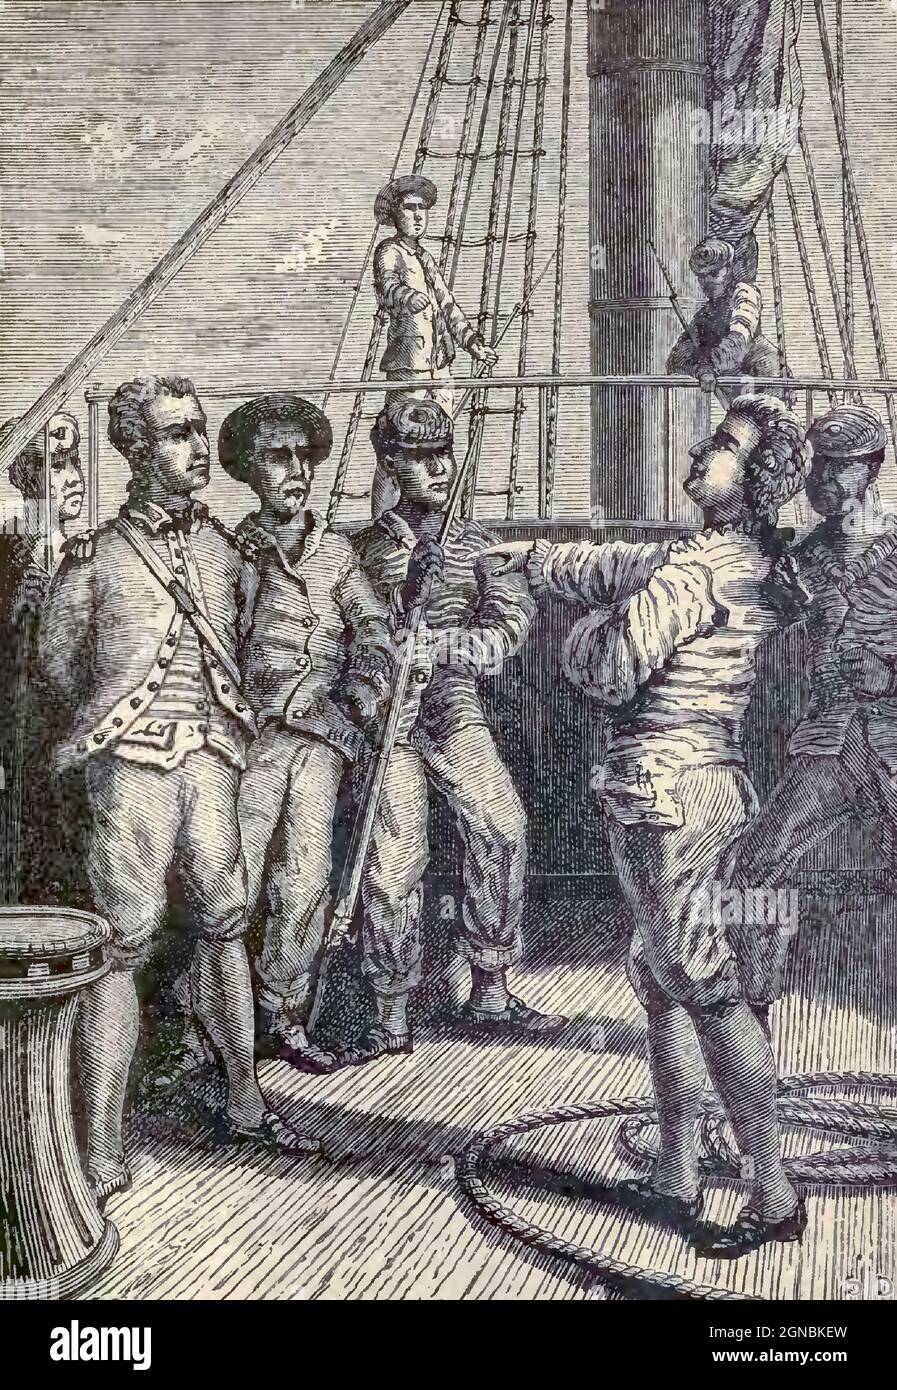 Capitán Bligh en el poder de los amotinados. HMS Bounty, también conocido como buque armado HM Bounty, era un pequeño buque mercante que la Marina Real compró en 1787 para una misión botánica. El barco fue enviado al Océano Pacífico Sur bajo el mando de William Bligh para adquirir plantas de pan y transportarlas a las Indias Occidentales. Esa misión nunca fue completada debido a un motín de 1789 dirigido por el teniente en funciones Fletcher Christian, un incidente ahora popularmente conocido como el motín en el Bounty. Los motines quemaron más tarde a Bounty mientras estaba amarrada en la isla de Pitcairn. Foto de stock